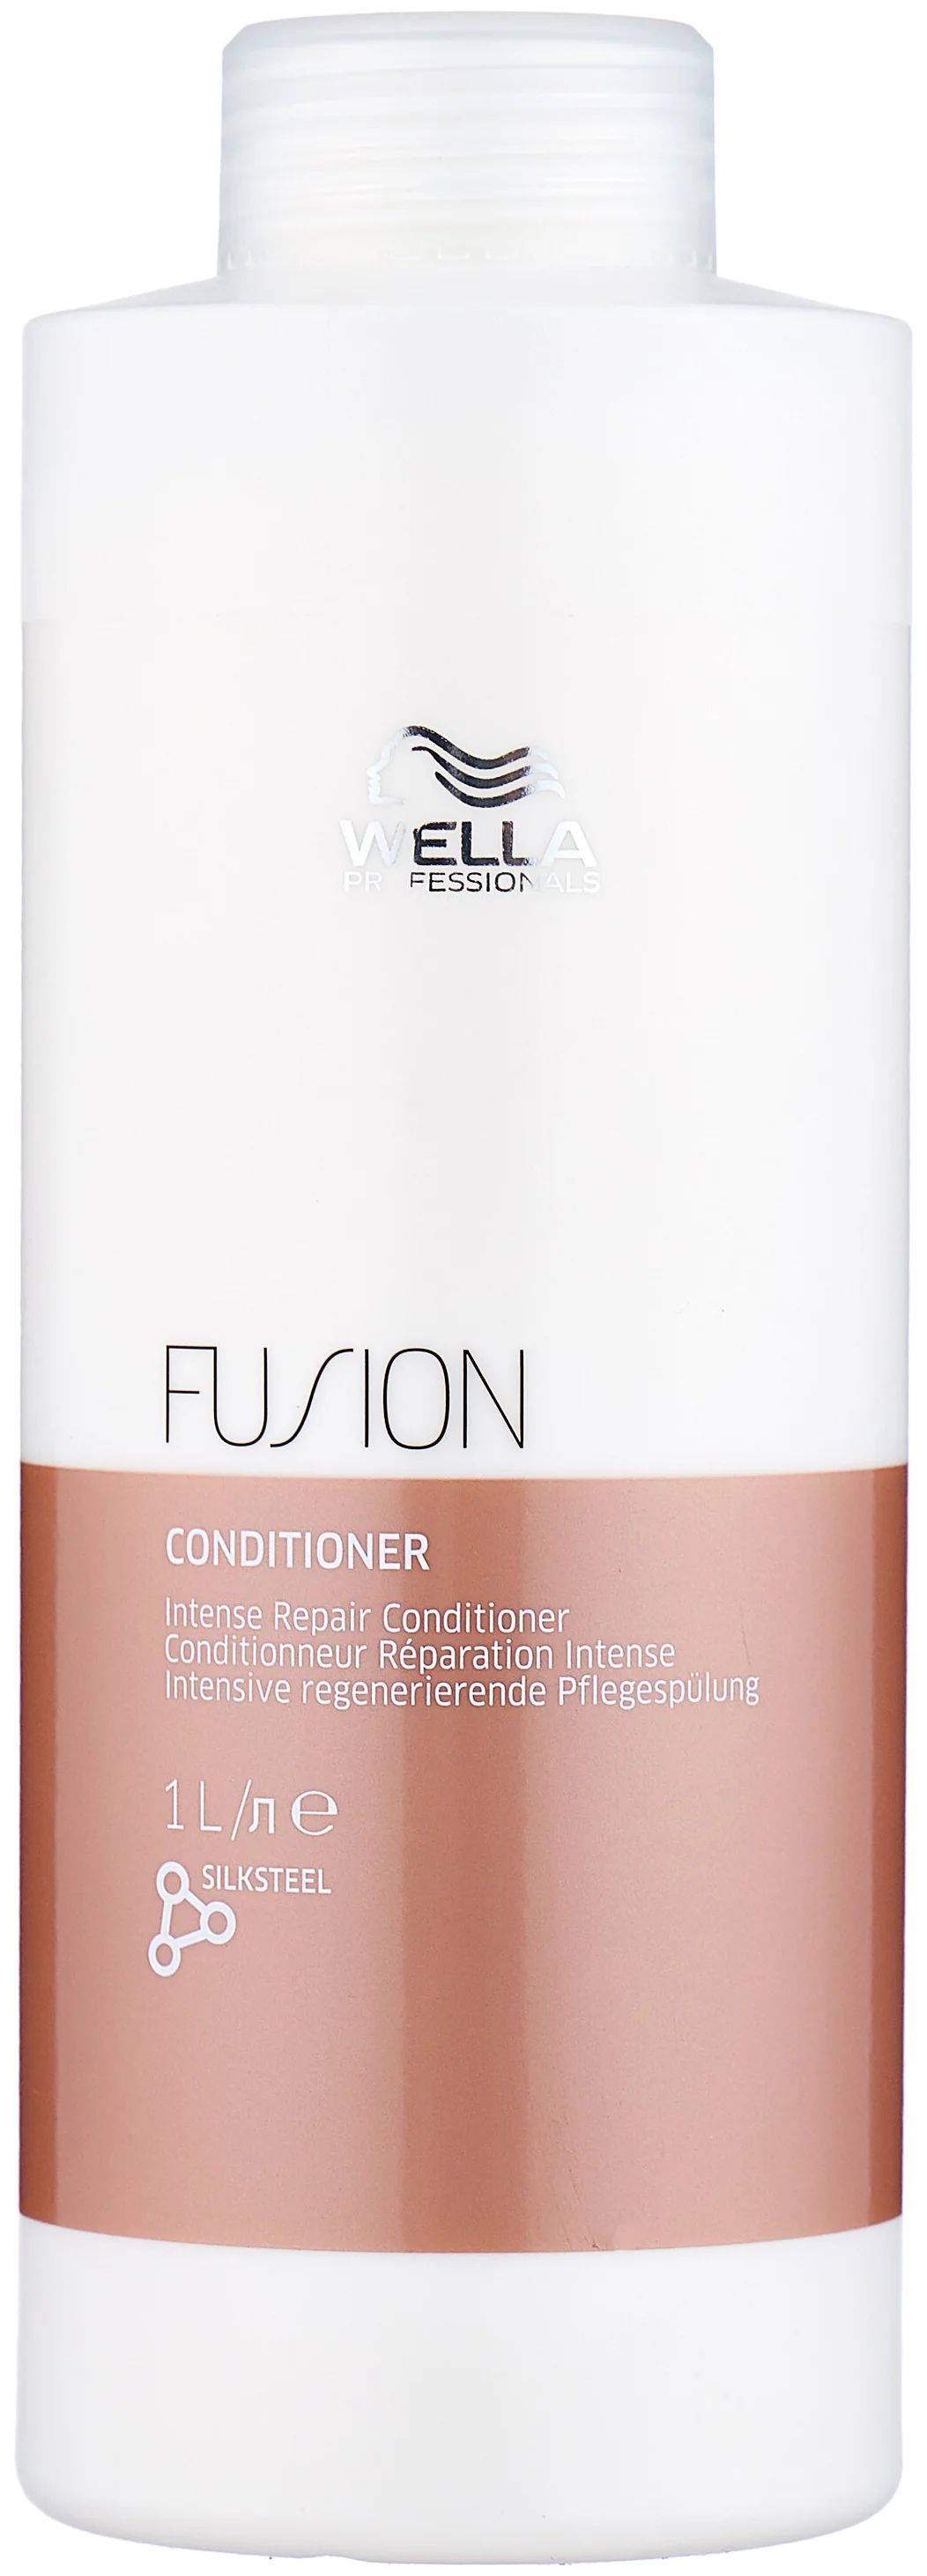 Бальзам для волос Wella Professionals Fusion интенсивно восстанавливающий, 1 л интенсивный восстанавливающий бальзам fusion 5604 5713 5706 200 мл